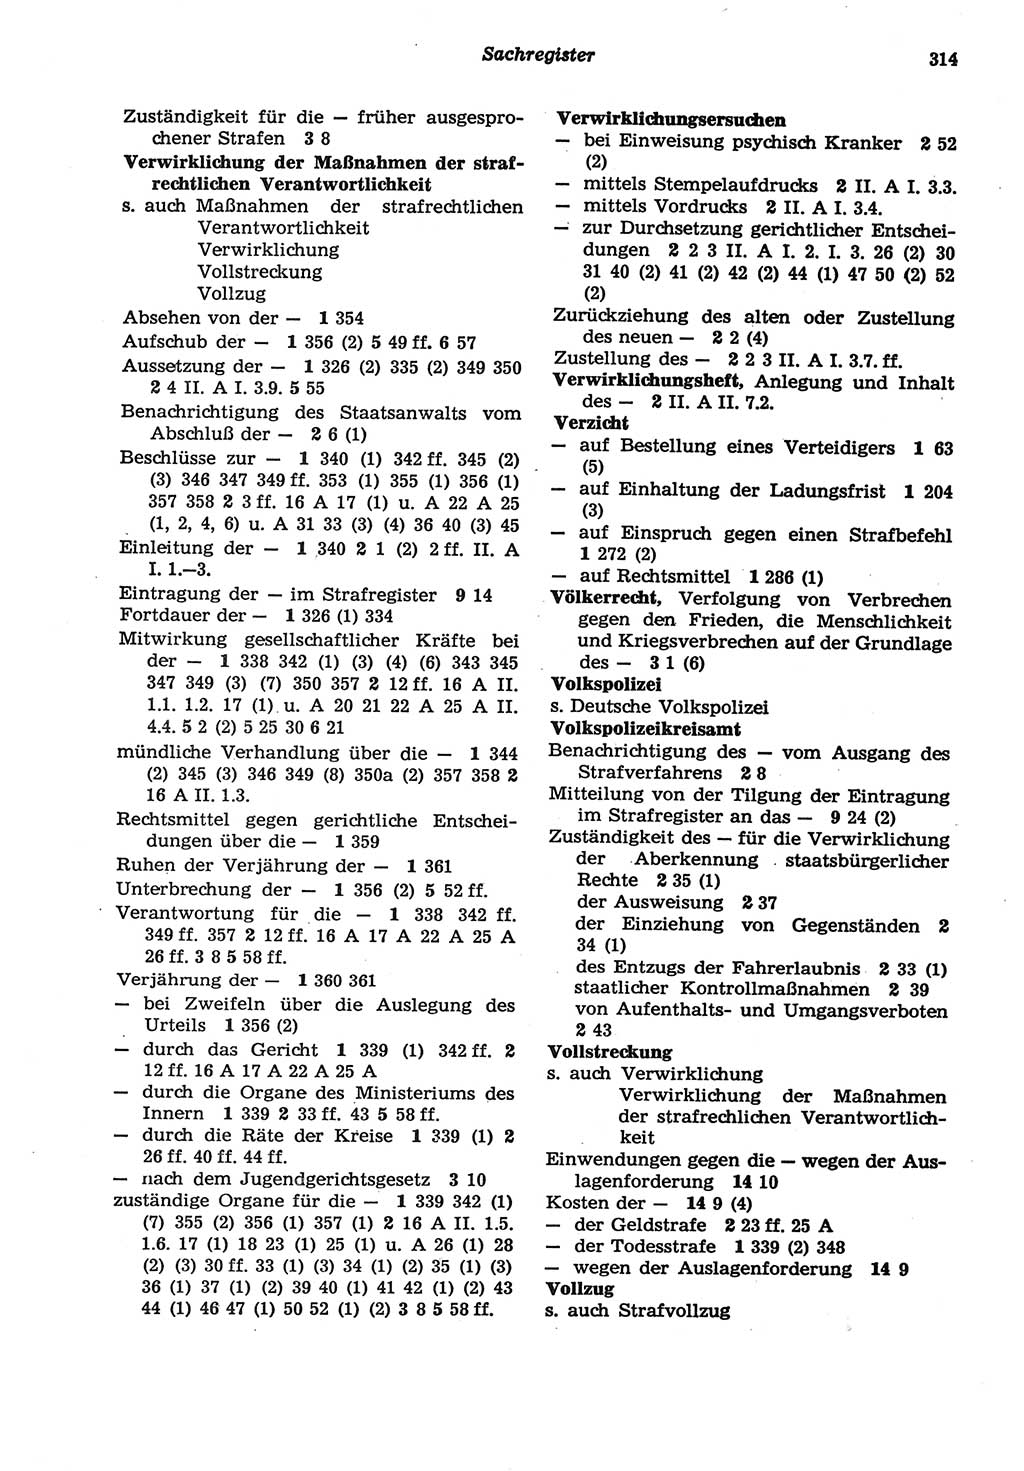 Strafprozeßordnung (StPO) der Deutschen Demokratischen Republik (DDR) sowie angrenzende Gesetze und Bestimmungen 1977, Seite 314 (StPO DDR Ges. Best. 1977, S. 314)